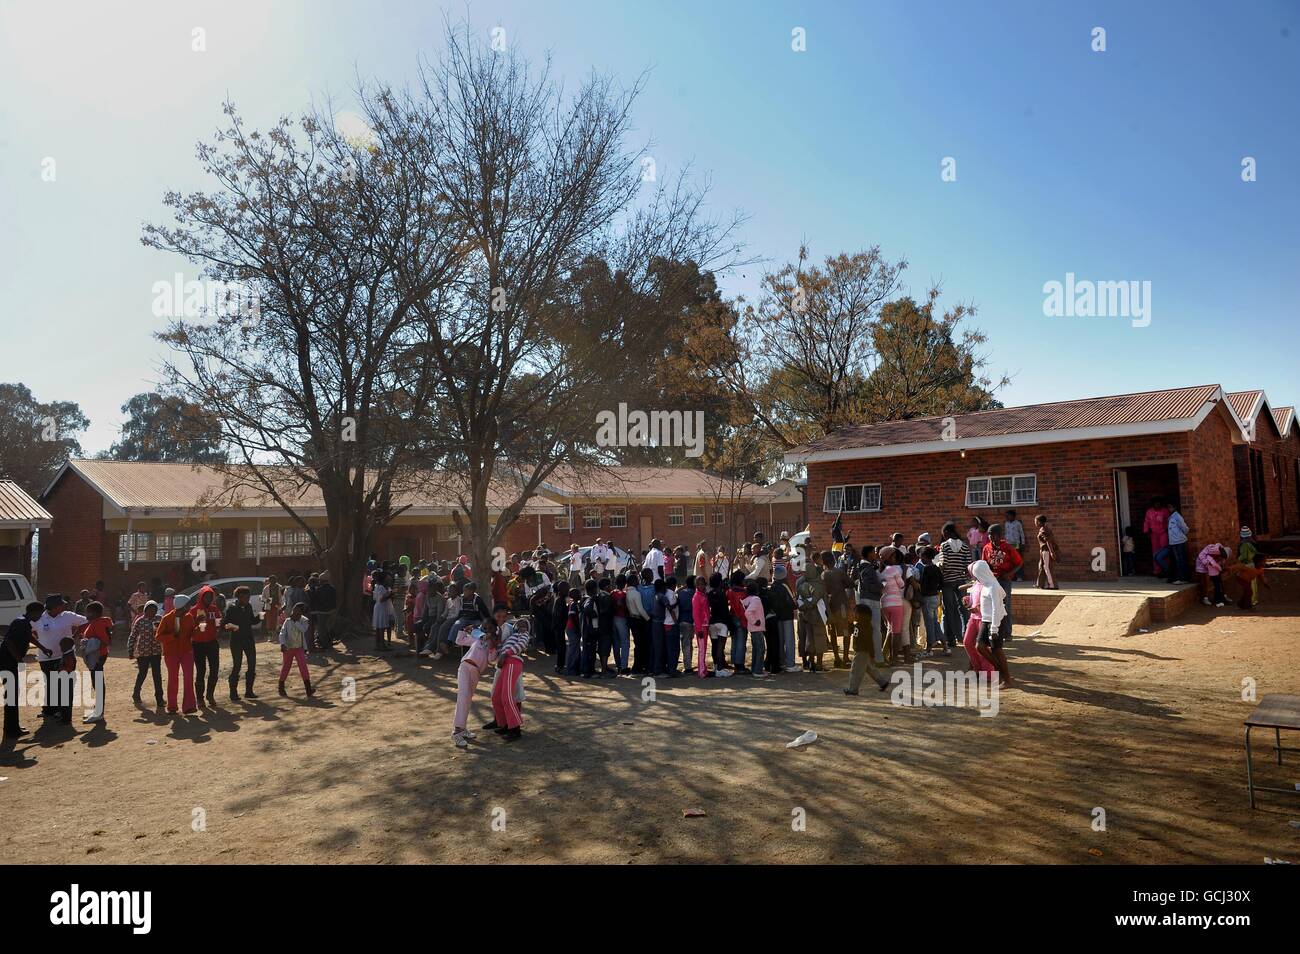 Verwaiste und gefährdete Kinder nehmen an einem Projekt von Save the Children Teil, das ihnen Essen und Trinken und einen sicheren Ort zum gemeinsamen Spielen bietet, an einer Schule in der Stadt Parys im Freistaat Südafrika. Stockfoto